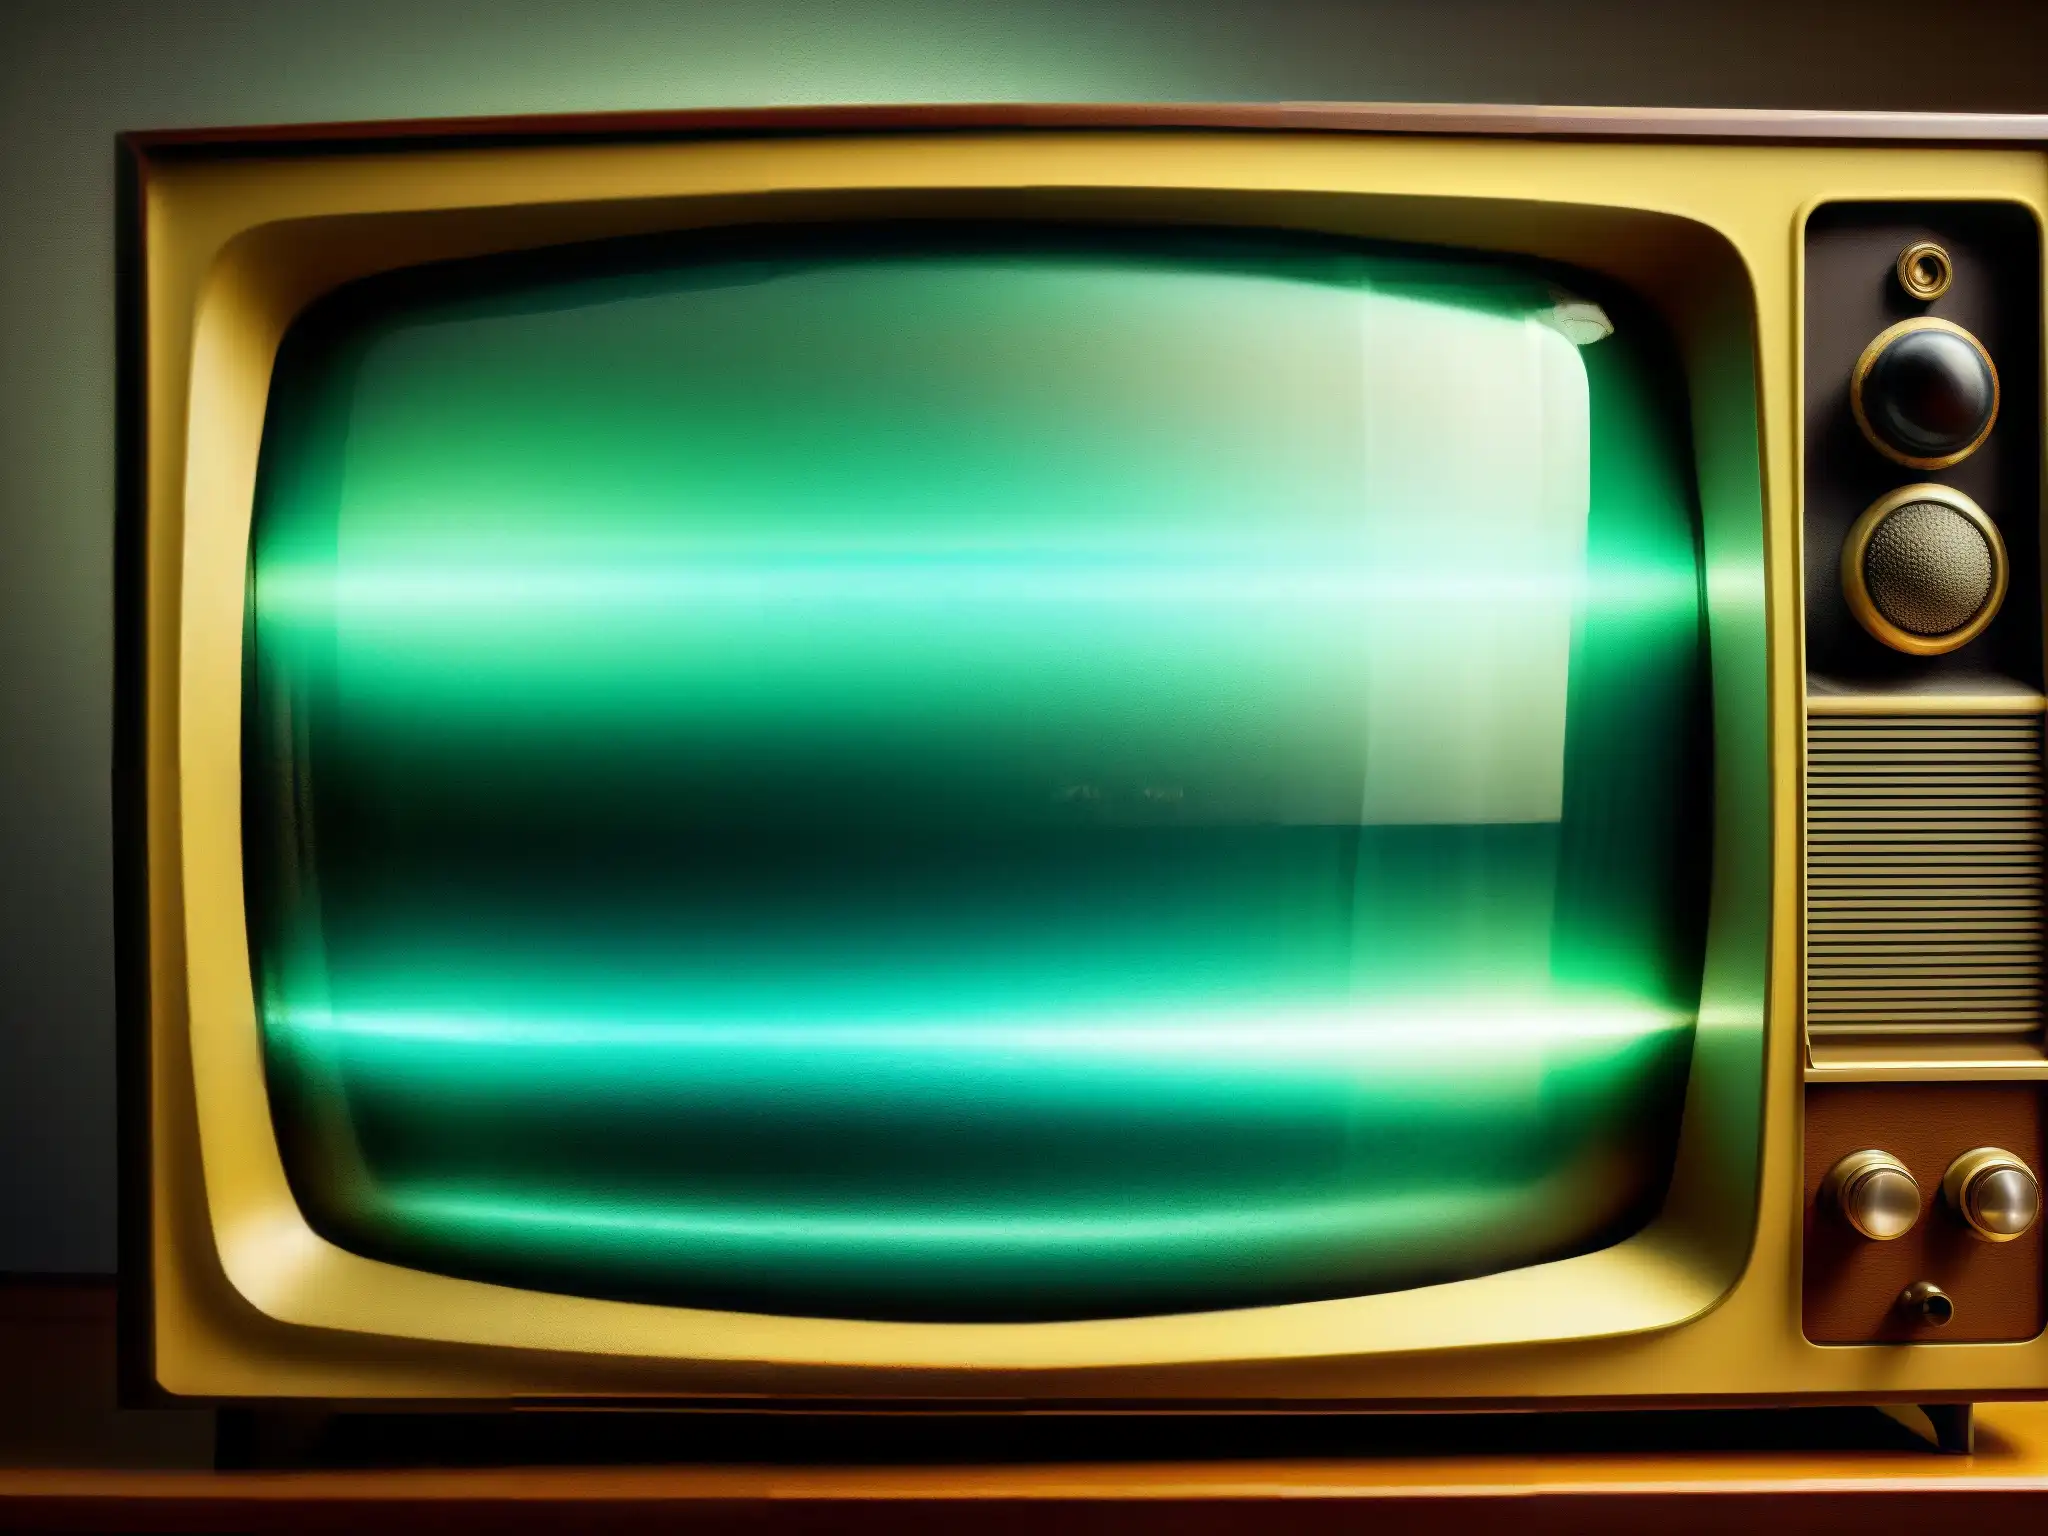 Imagen inquietante de un televisor vintage mostrando figuras fantasmales superpuestas en la pantalla, rodeado de dispositivos electrónicos antiguos